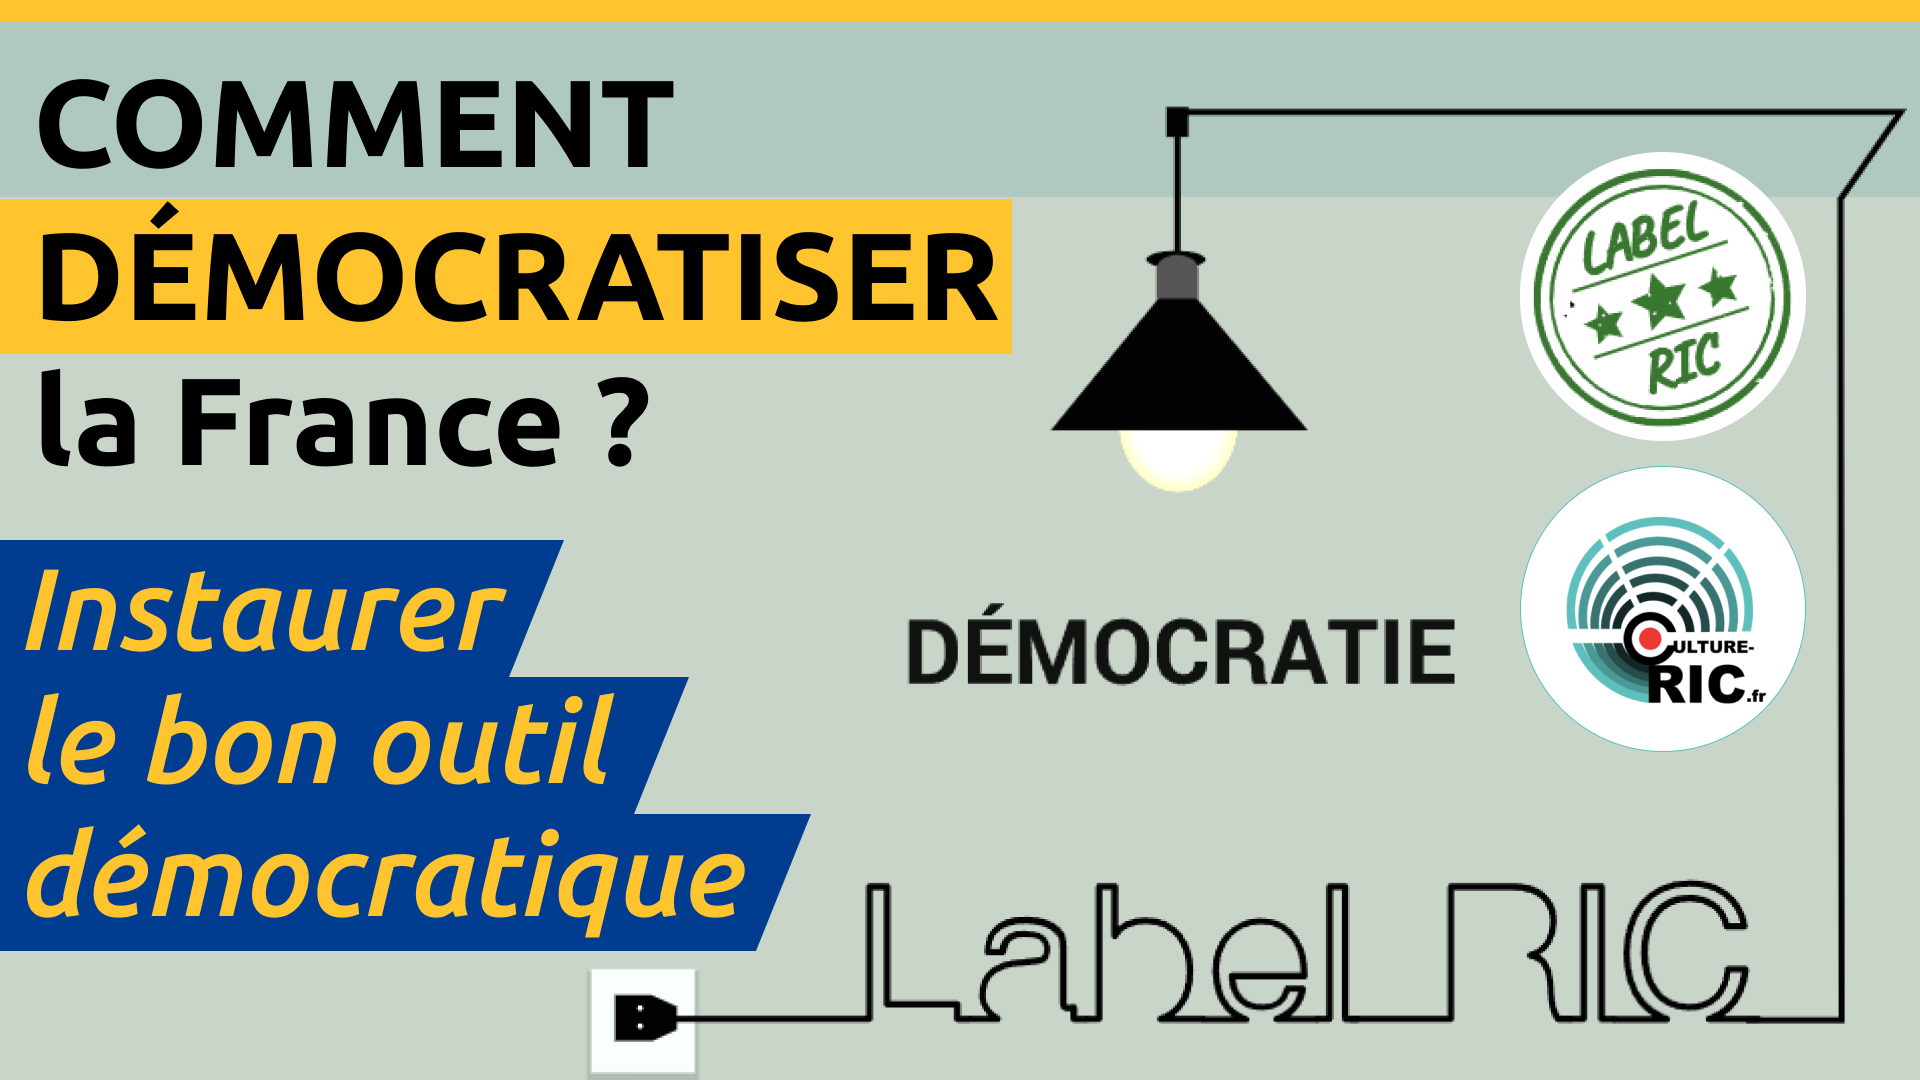 Live : Comment démocratiser la France avec le Label RIC et Culture-RIC ?